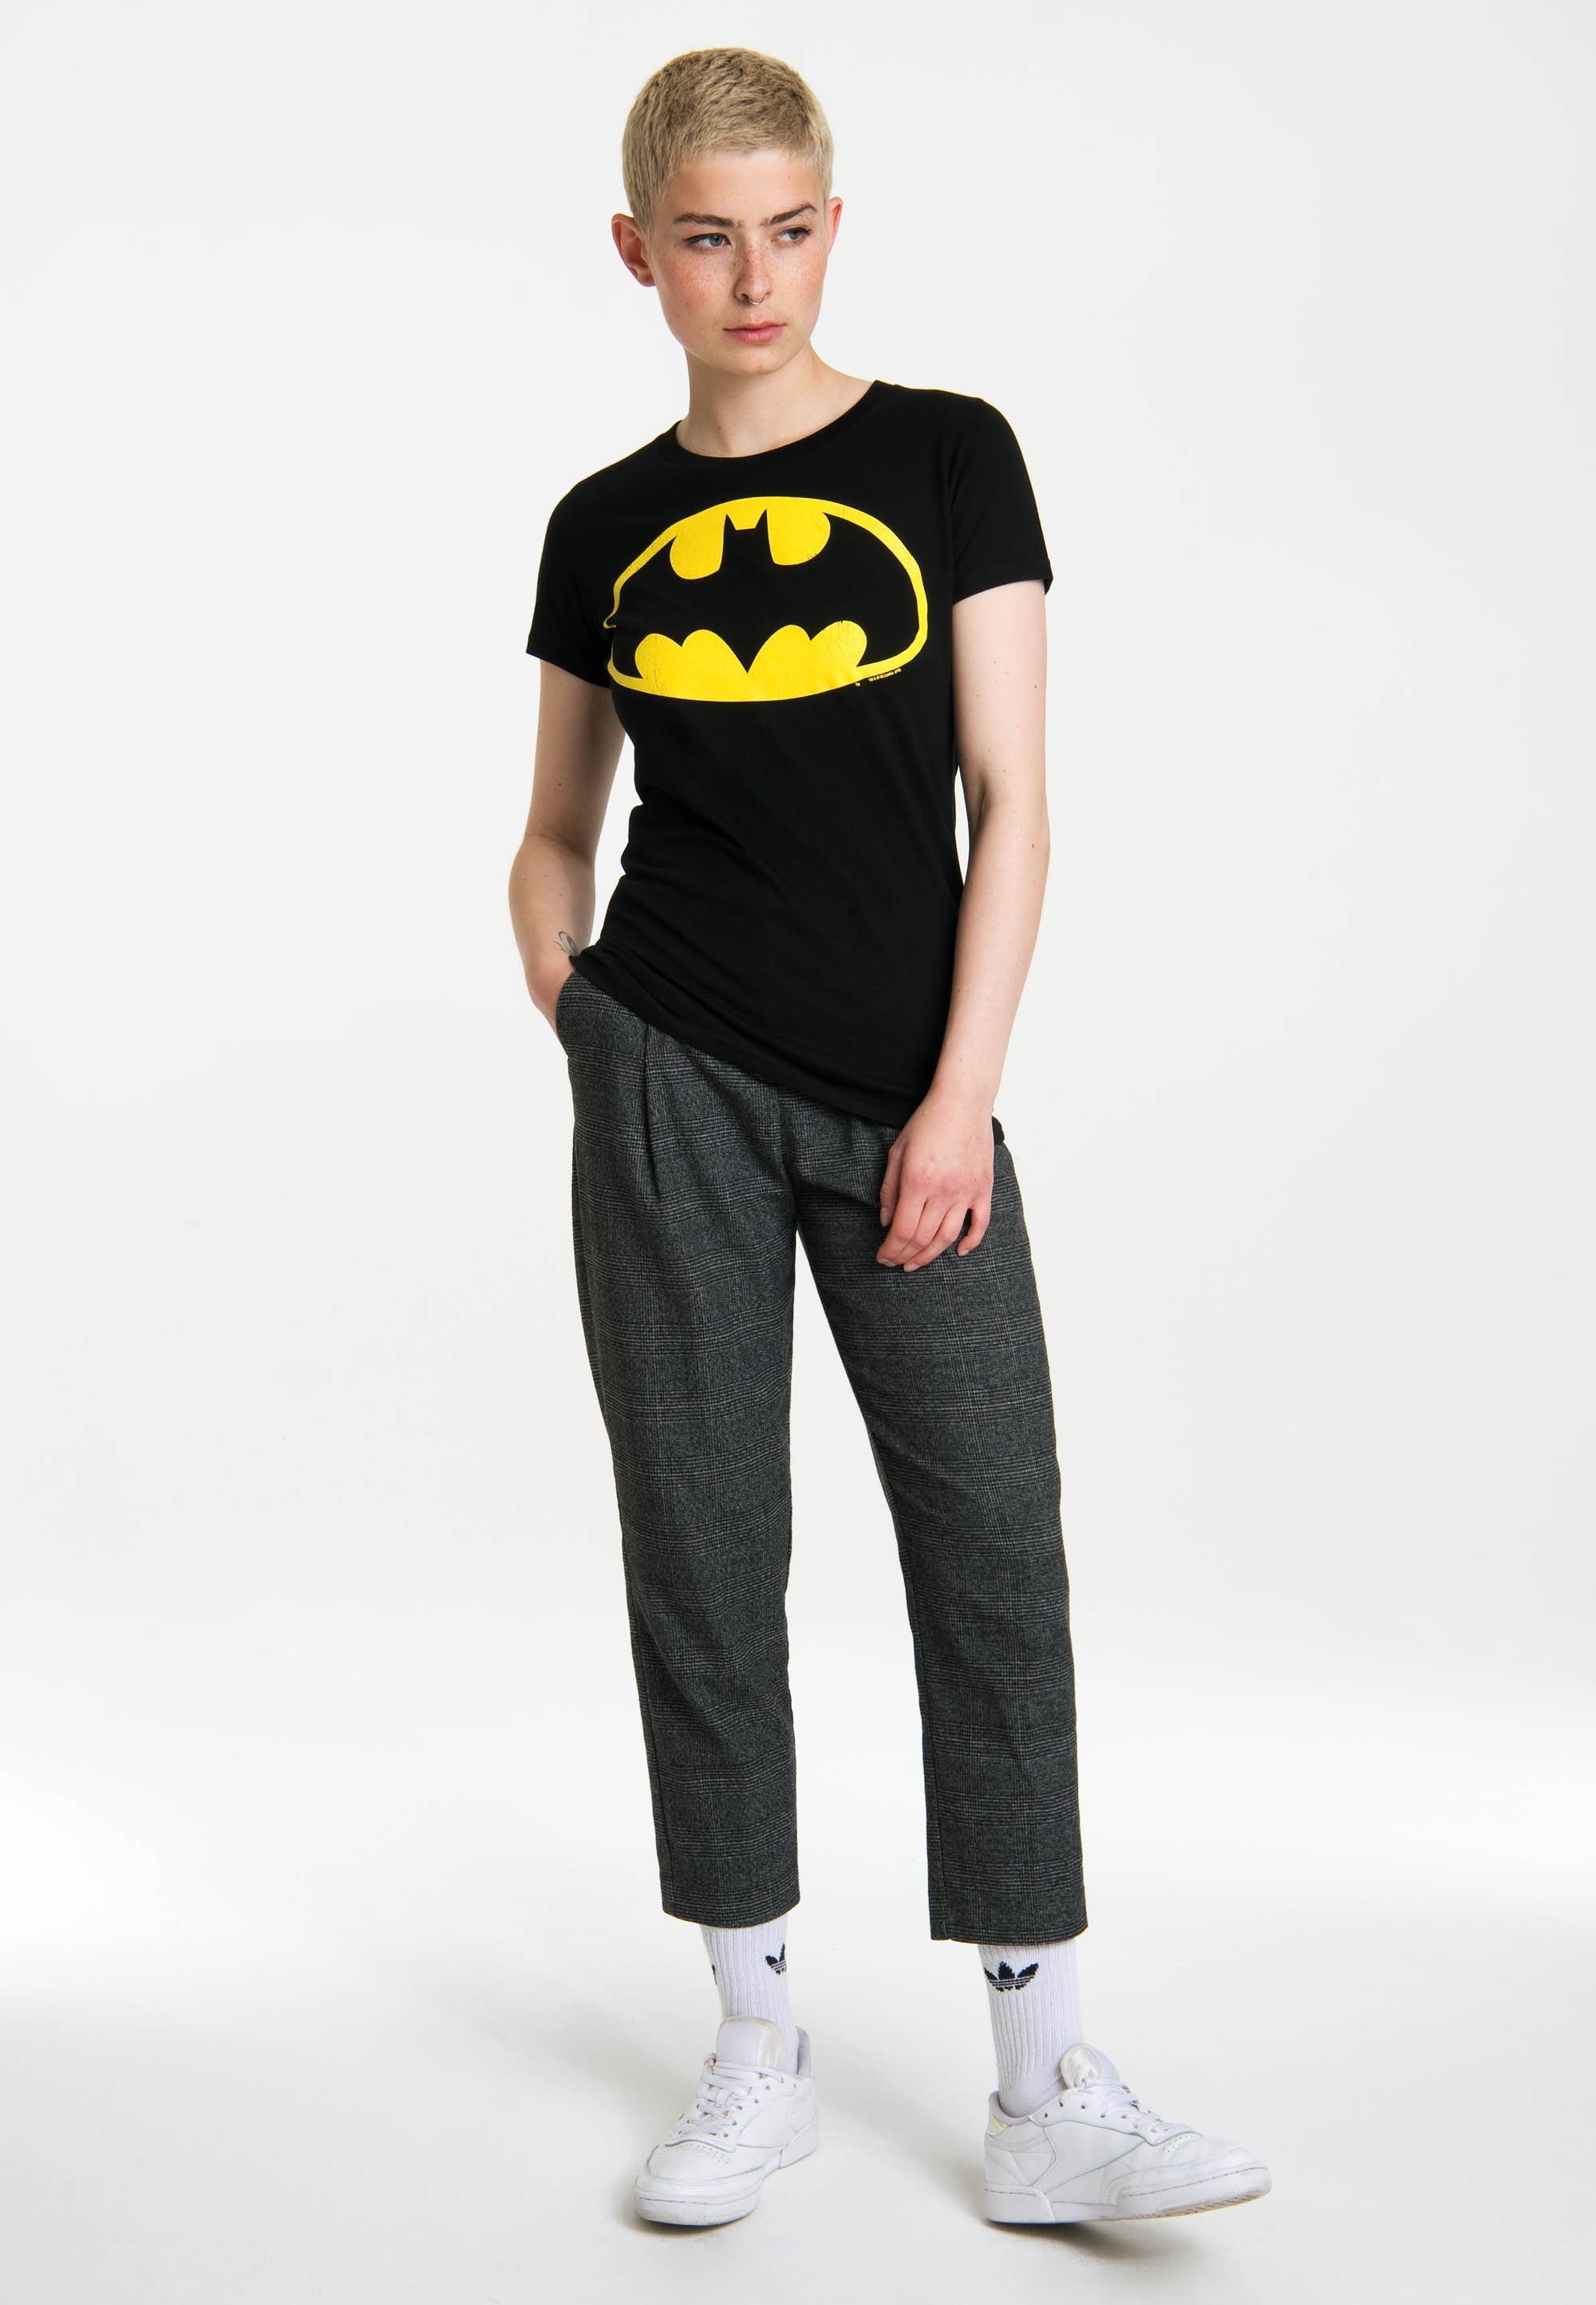 LOGOSHIRT T-Shirt Batman mit coolem Superhelden-Print